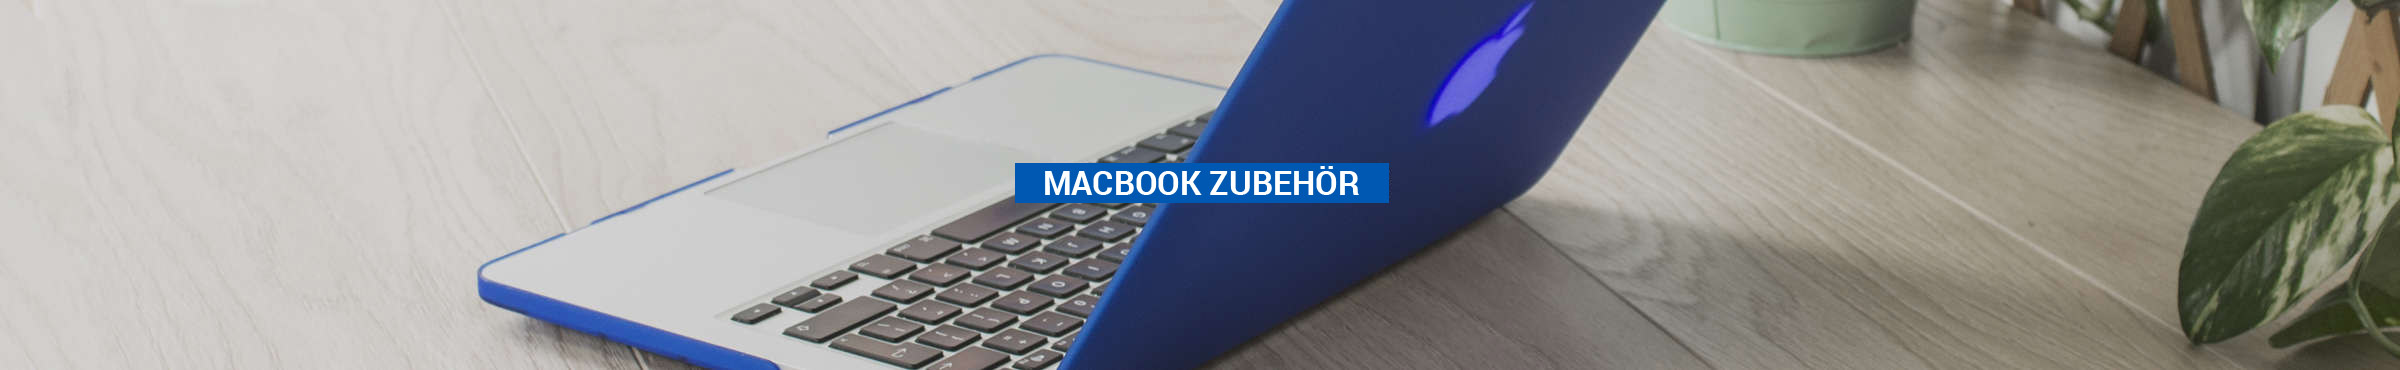 MacBook Zubehör